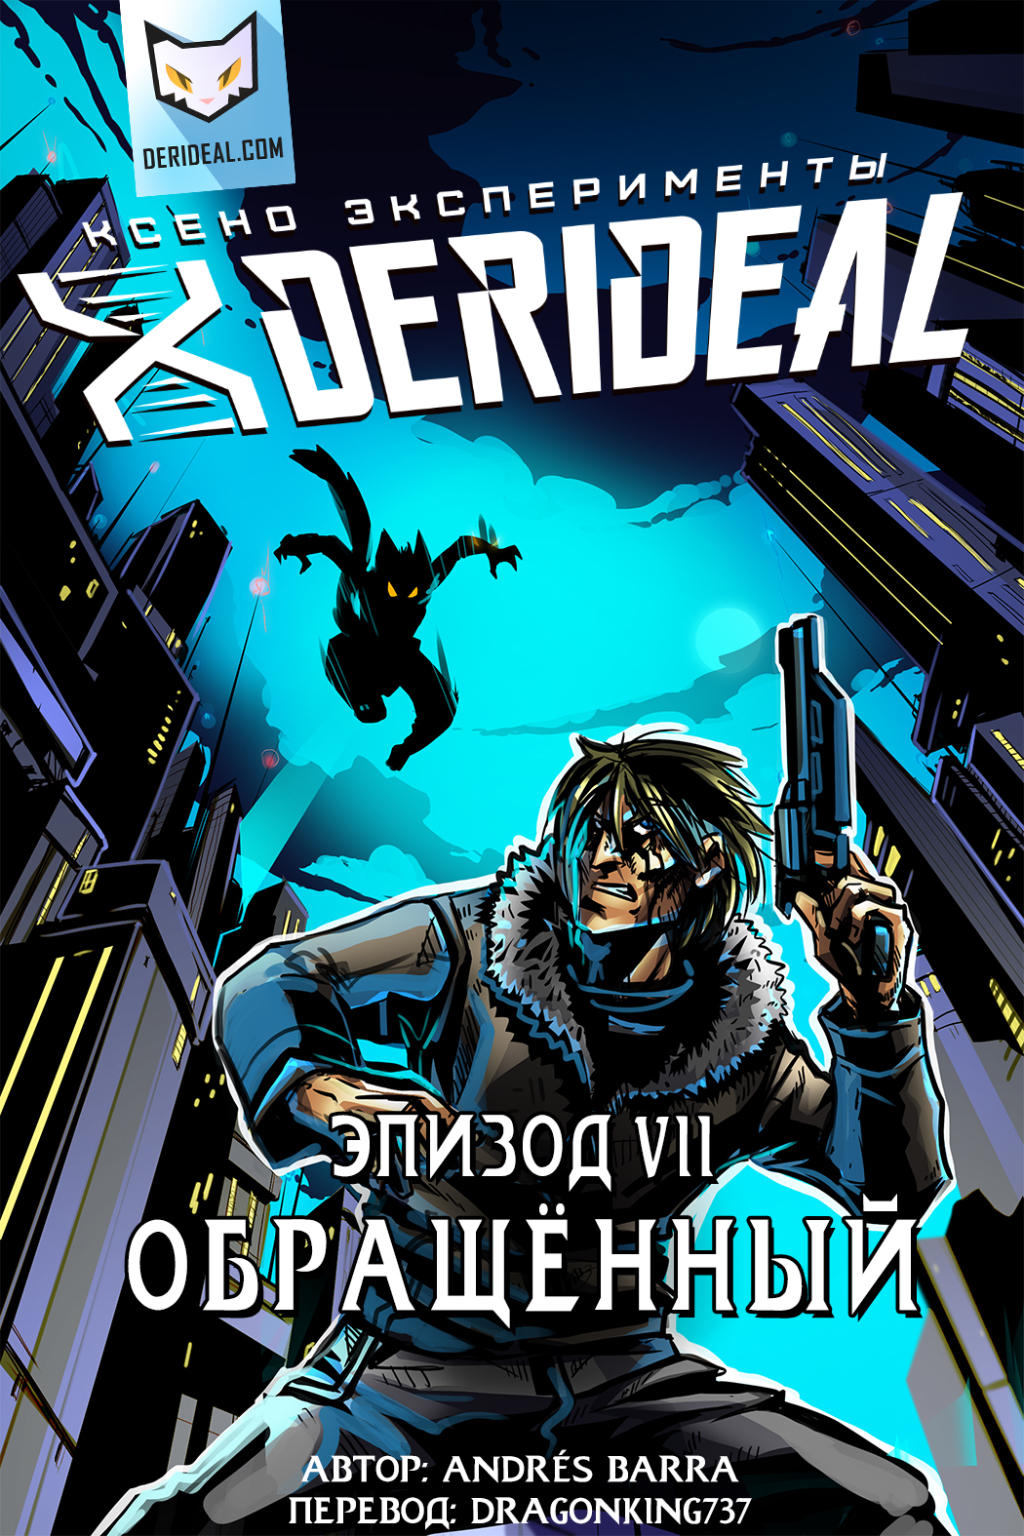 Комикс Derideal: выпуск №213